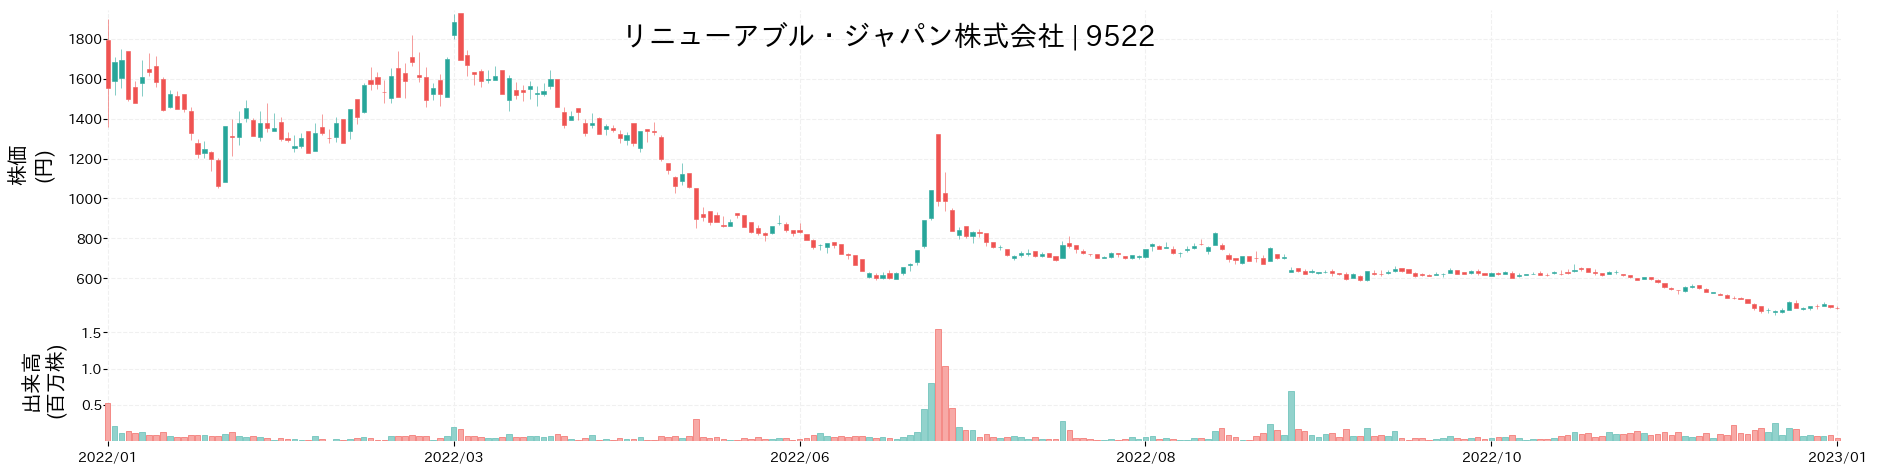 リニューアブル・ジャパンの株価推移(2022)